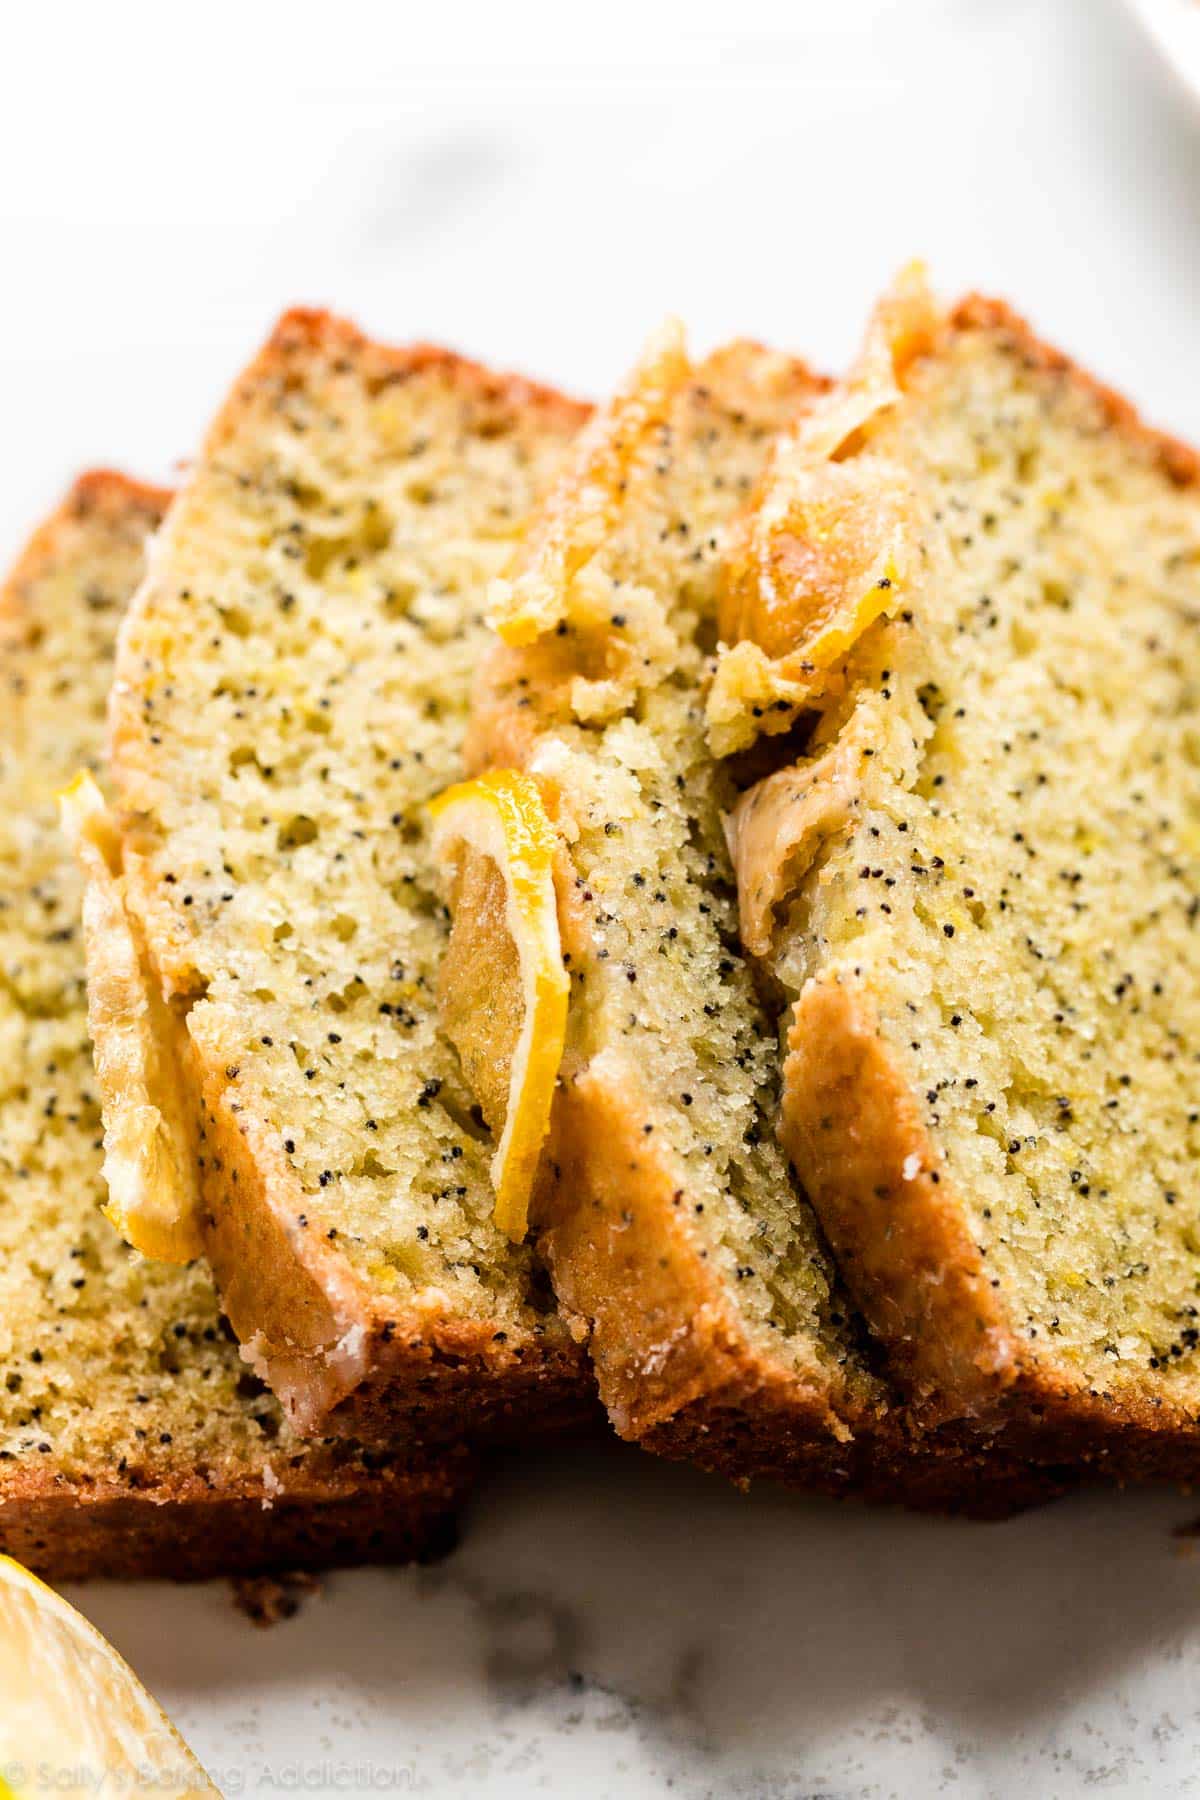 lemon poppy seed bread slices